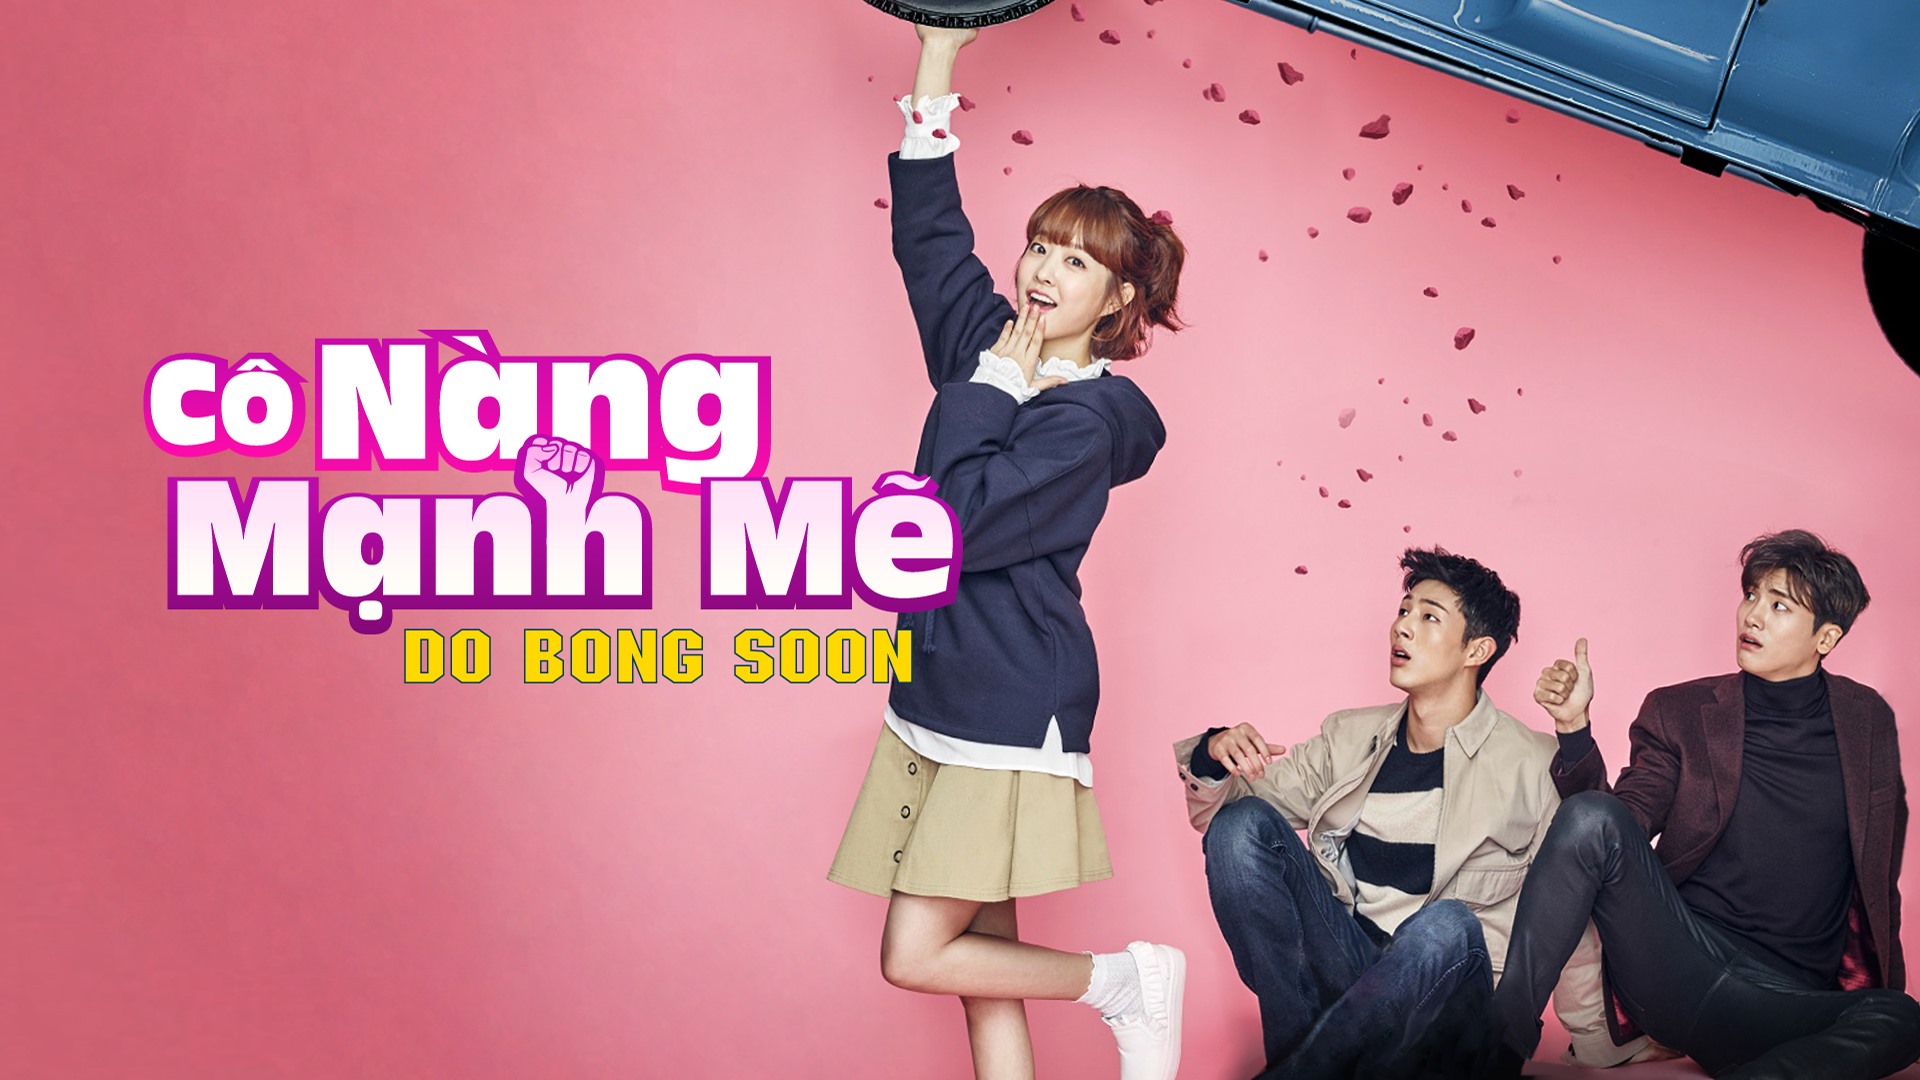 Cô nàng mạnh mẽ Do Bong Soon là một bộ phim hài hước đan xen tình cảm, với sự tham gia của các diễn viên Park Hyung Sik, Park Bo Young và Kim Ji Soo.